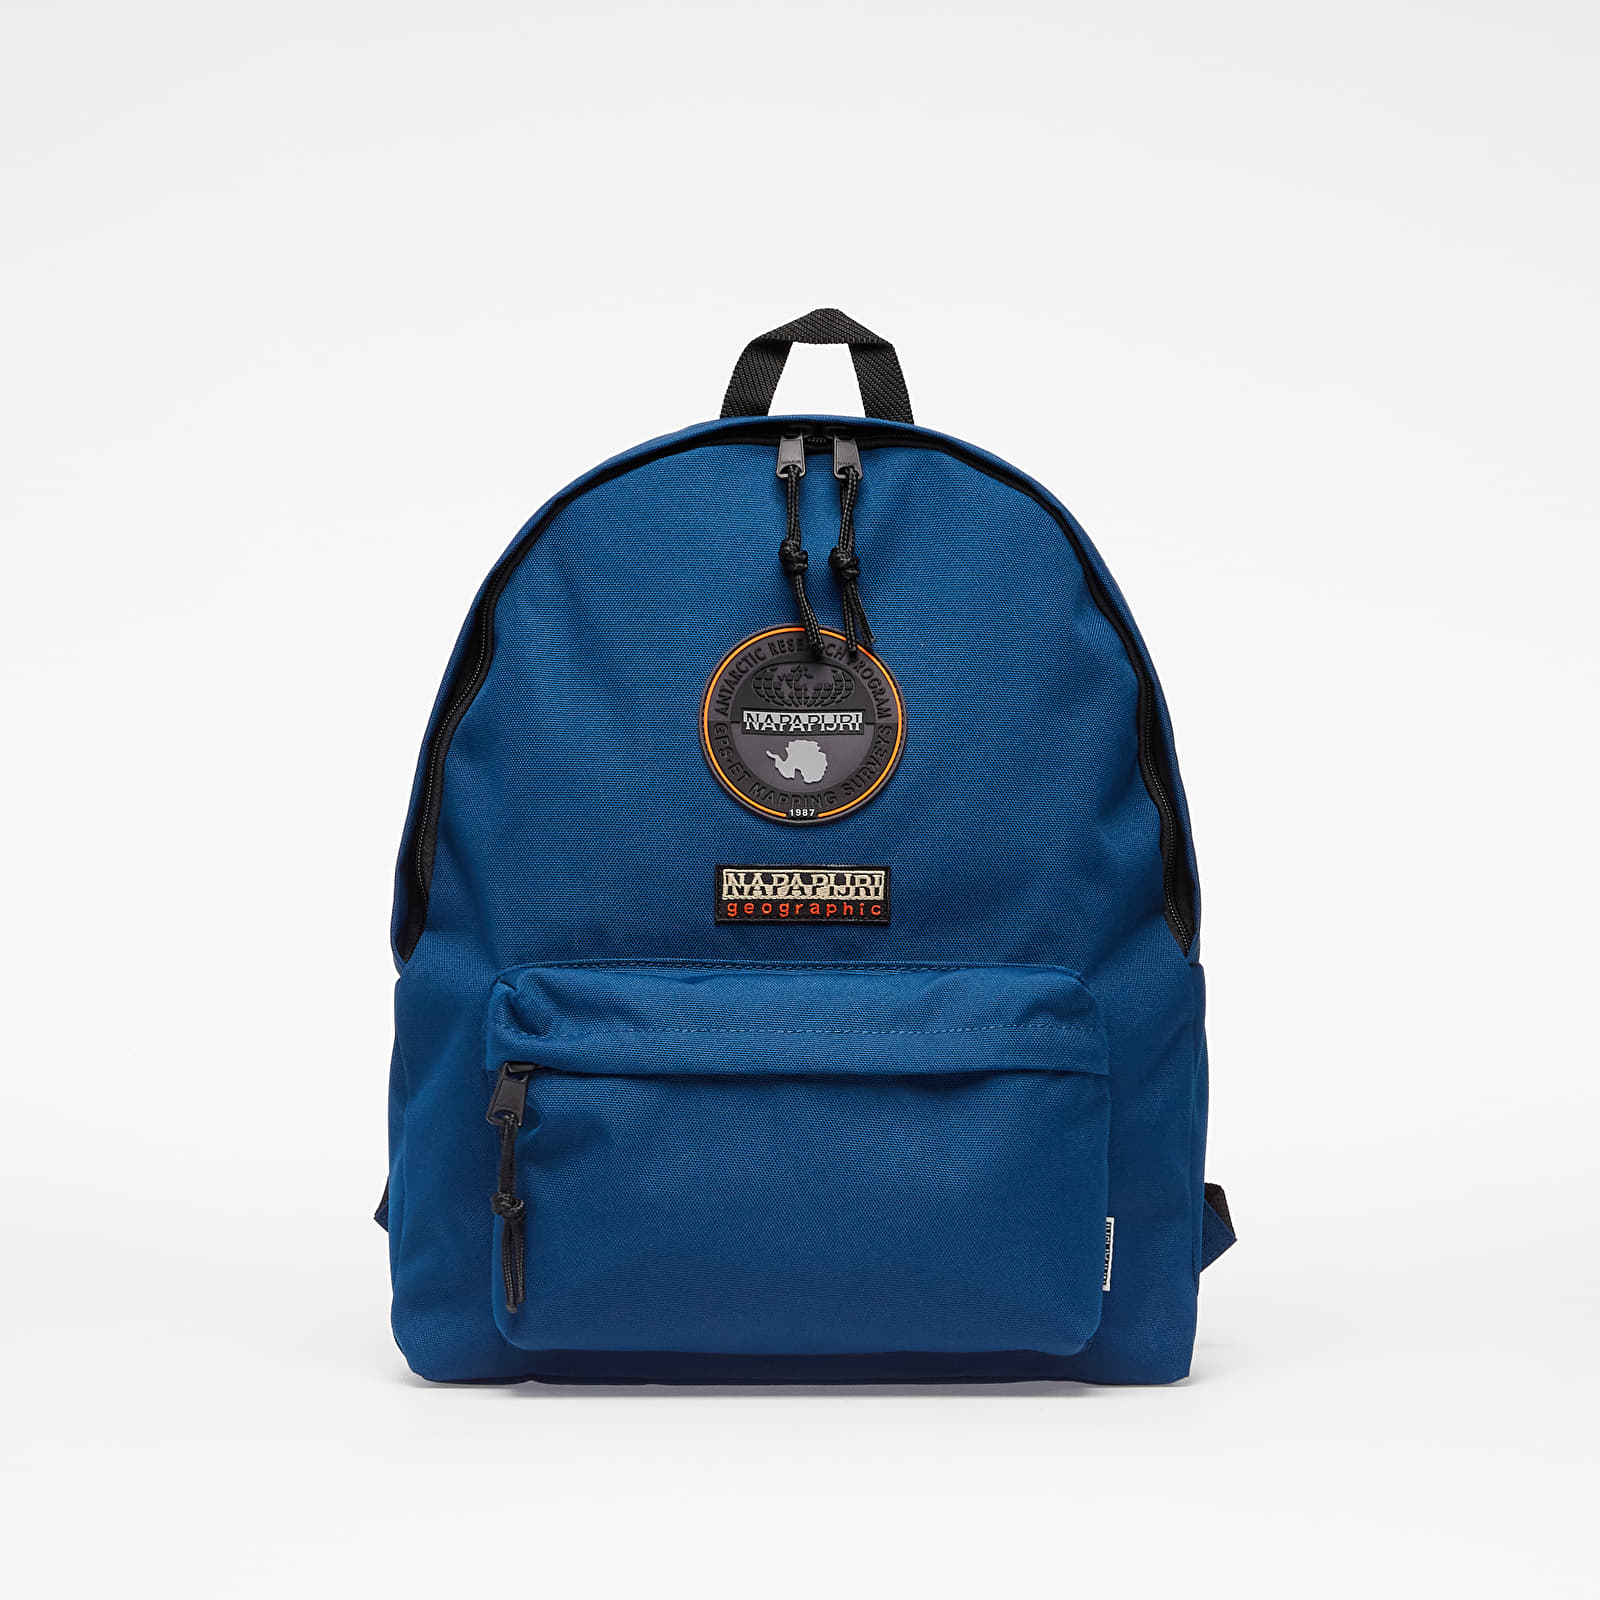 Backpack Napapijri Voyage 3 Blu Marine - Shop and Buy online